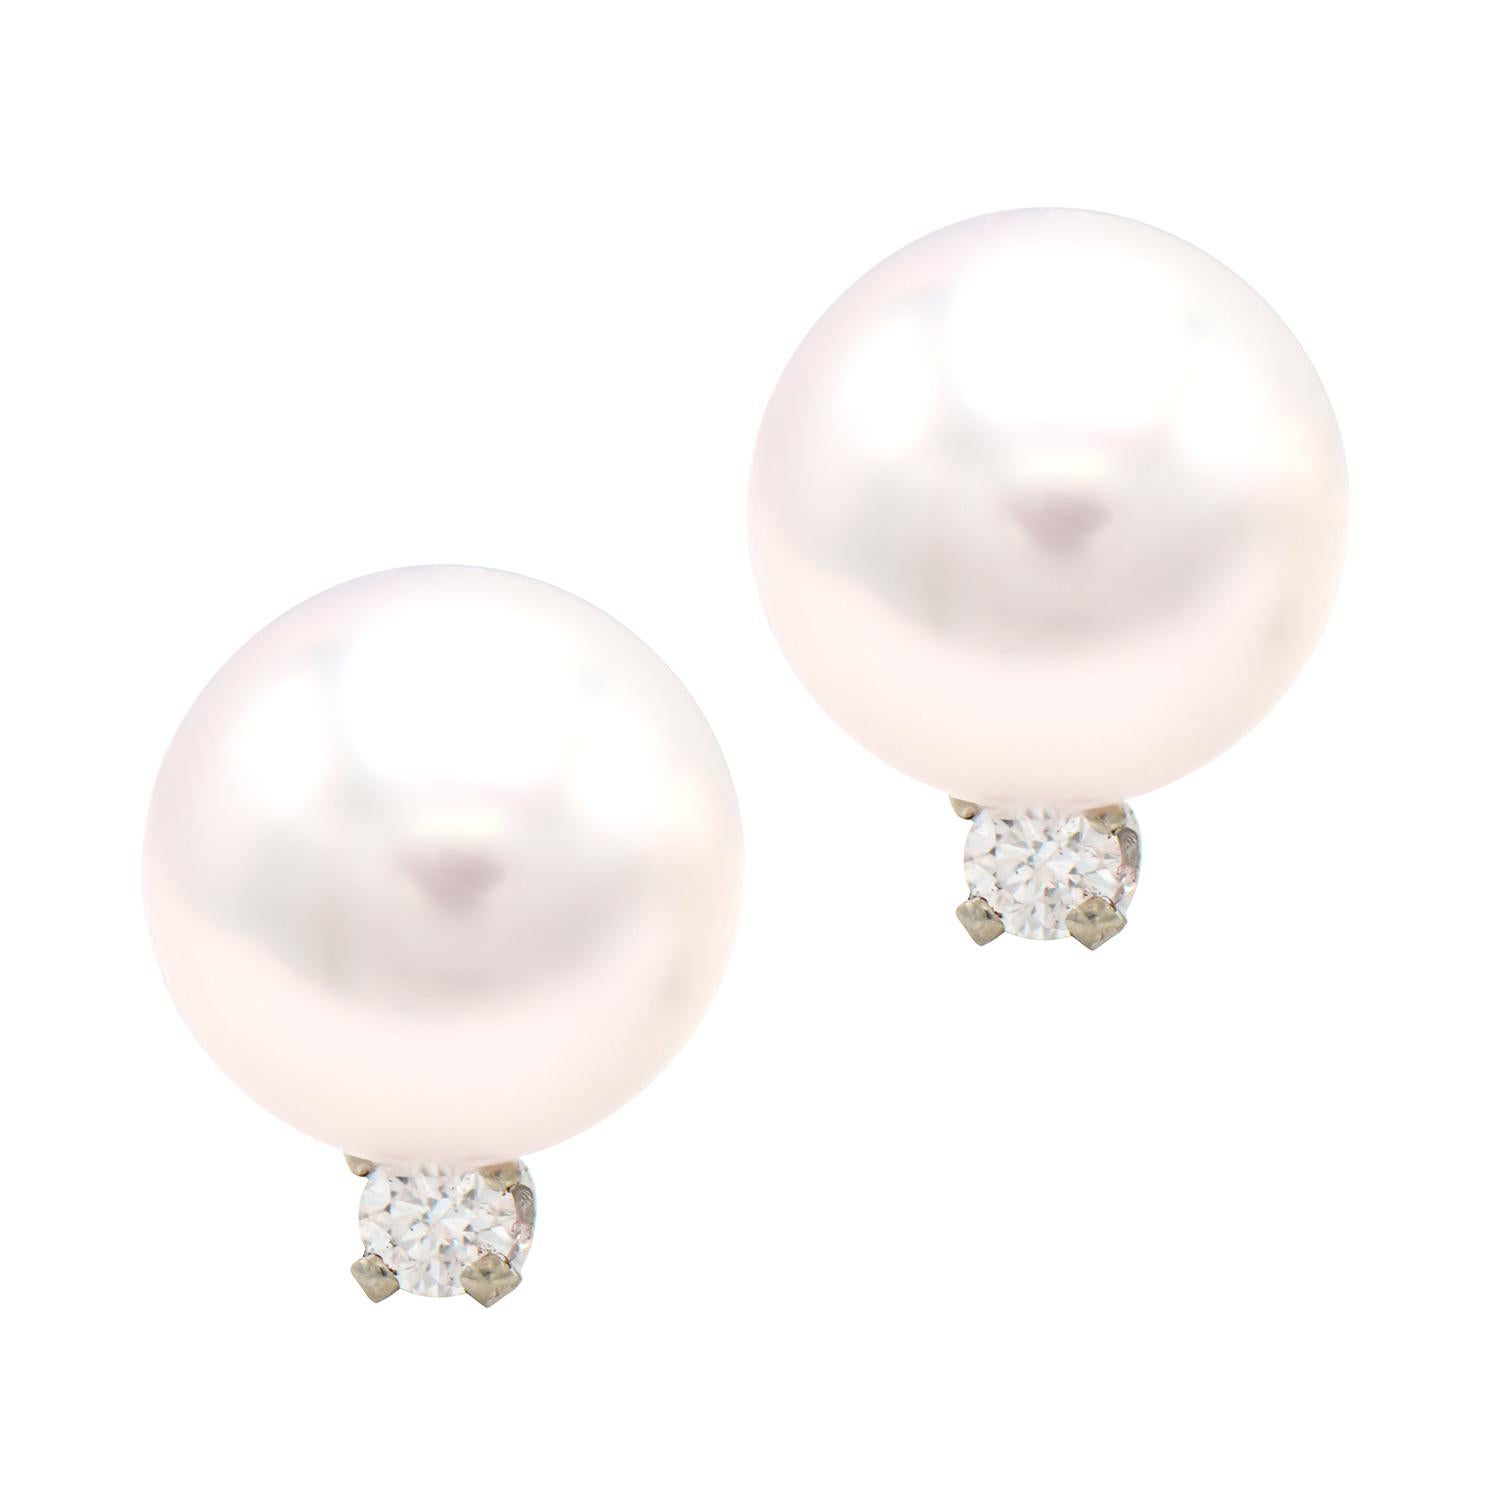 7mm pearl earrings on ear